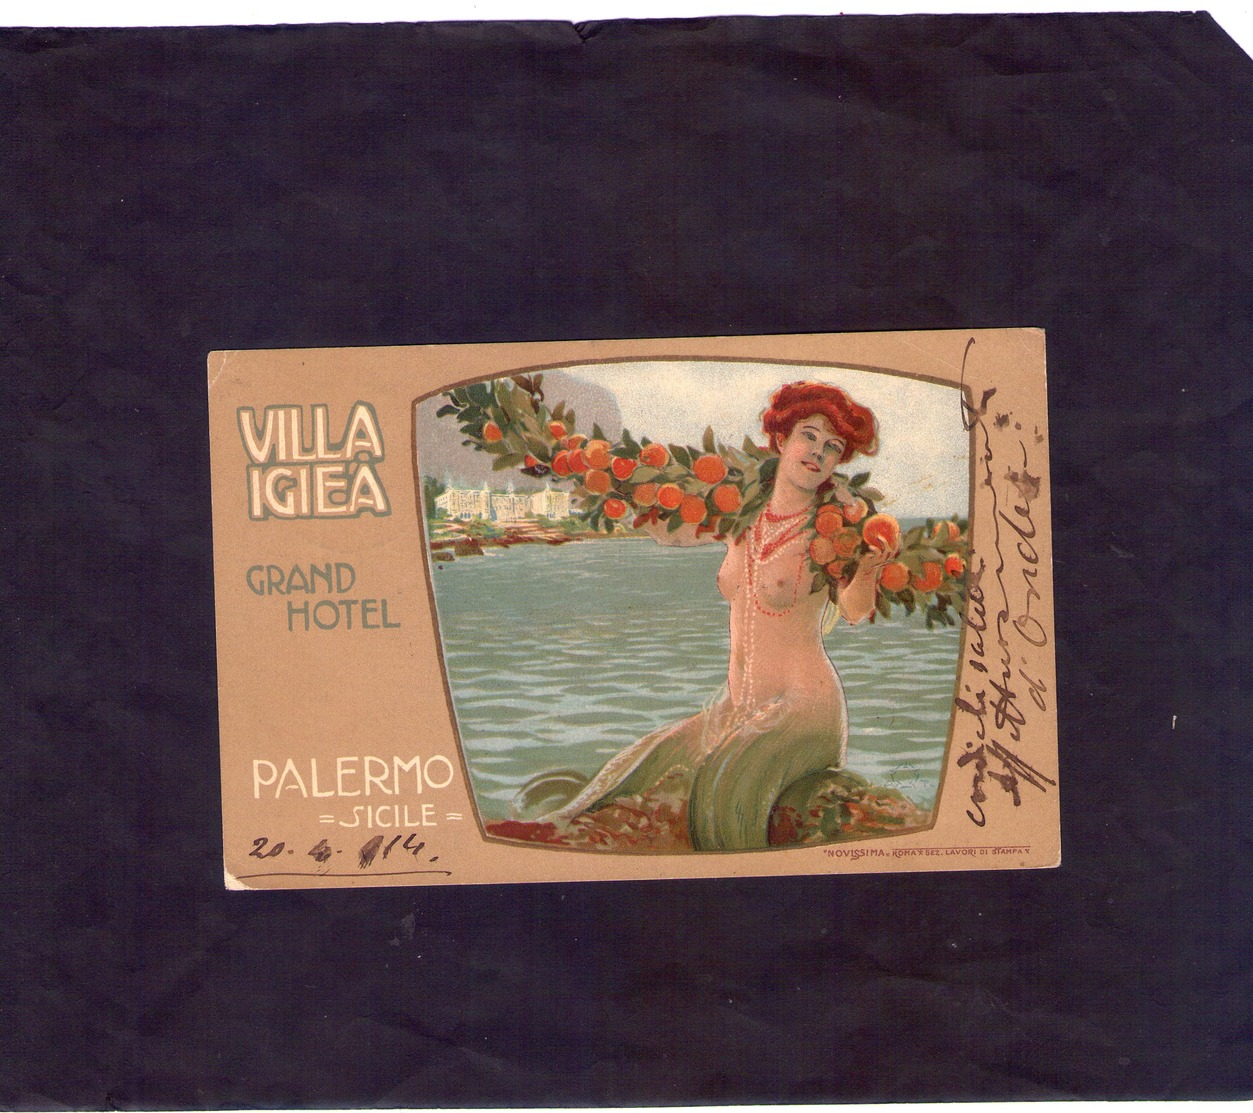 Sicilia Palerrmo  Cart. Villa Igiea Grand Hottel   Viaggiata Il 23 - 4 -  1914 - Palermo